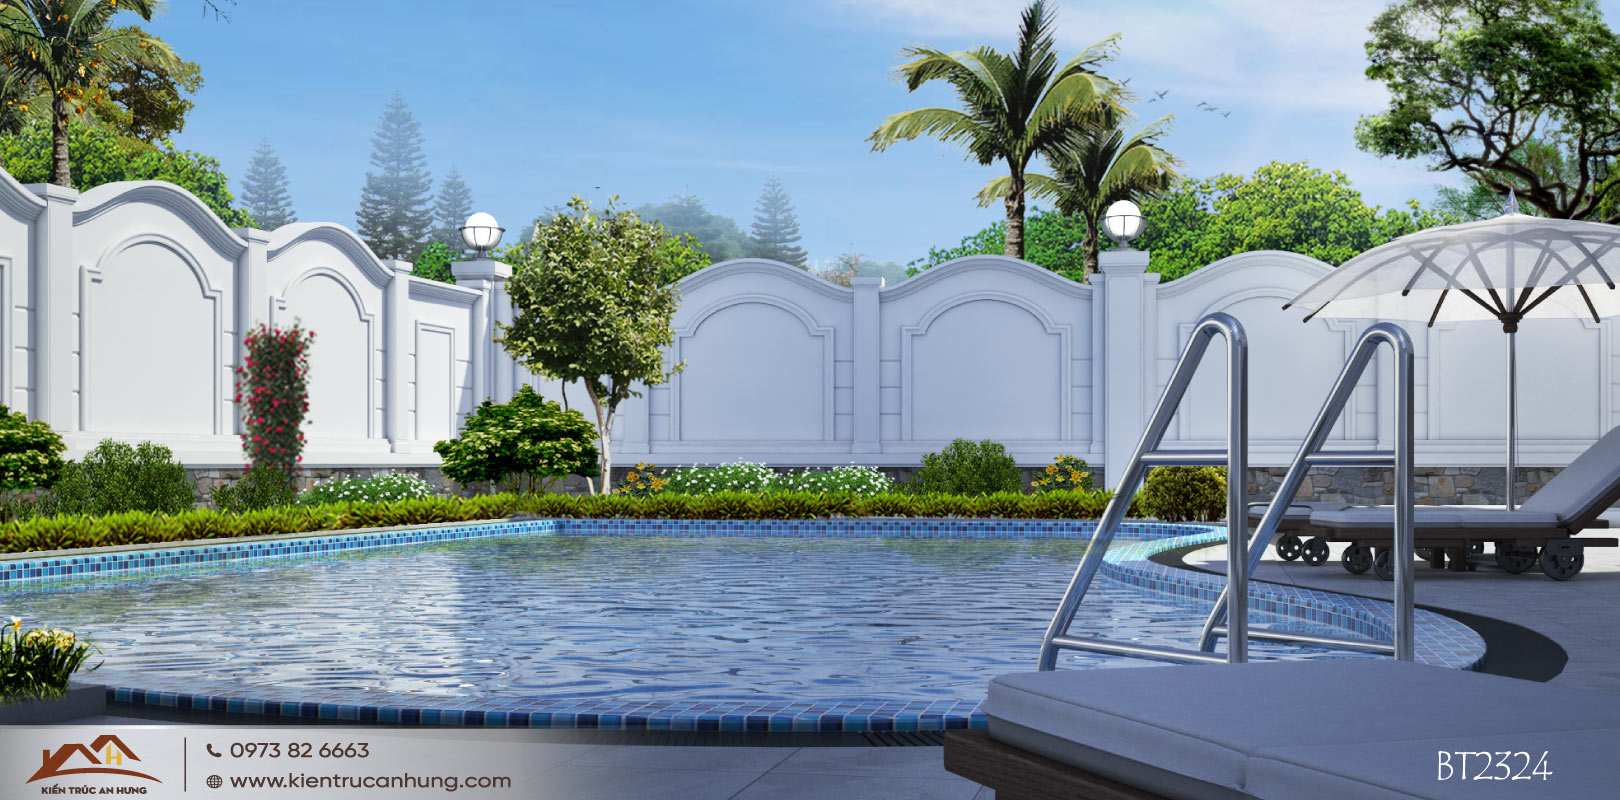 Bể bơi giúp điều hòa khí hậu cho căn biệt thự, góp phần kiến tạo cảnh quan đẹp cho công trình